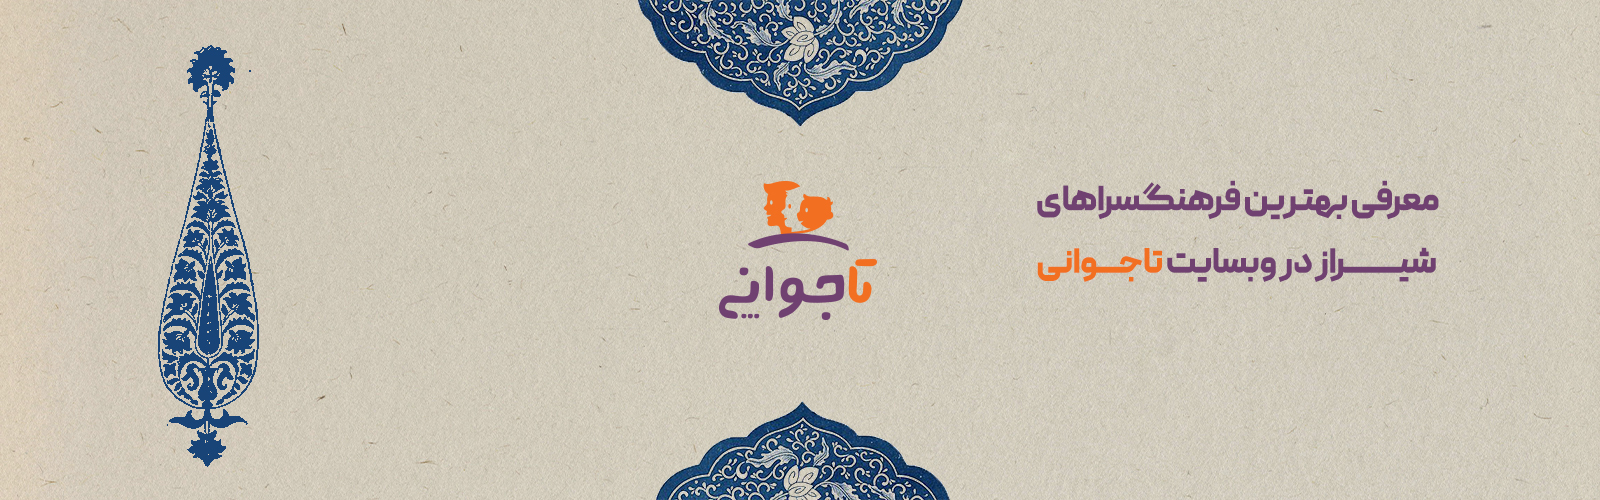 معرفی بهترین فرهنگسرا های شیراز